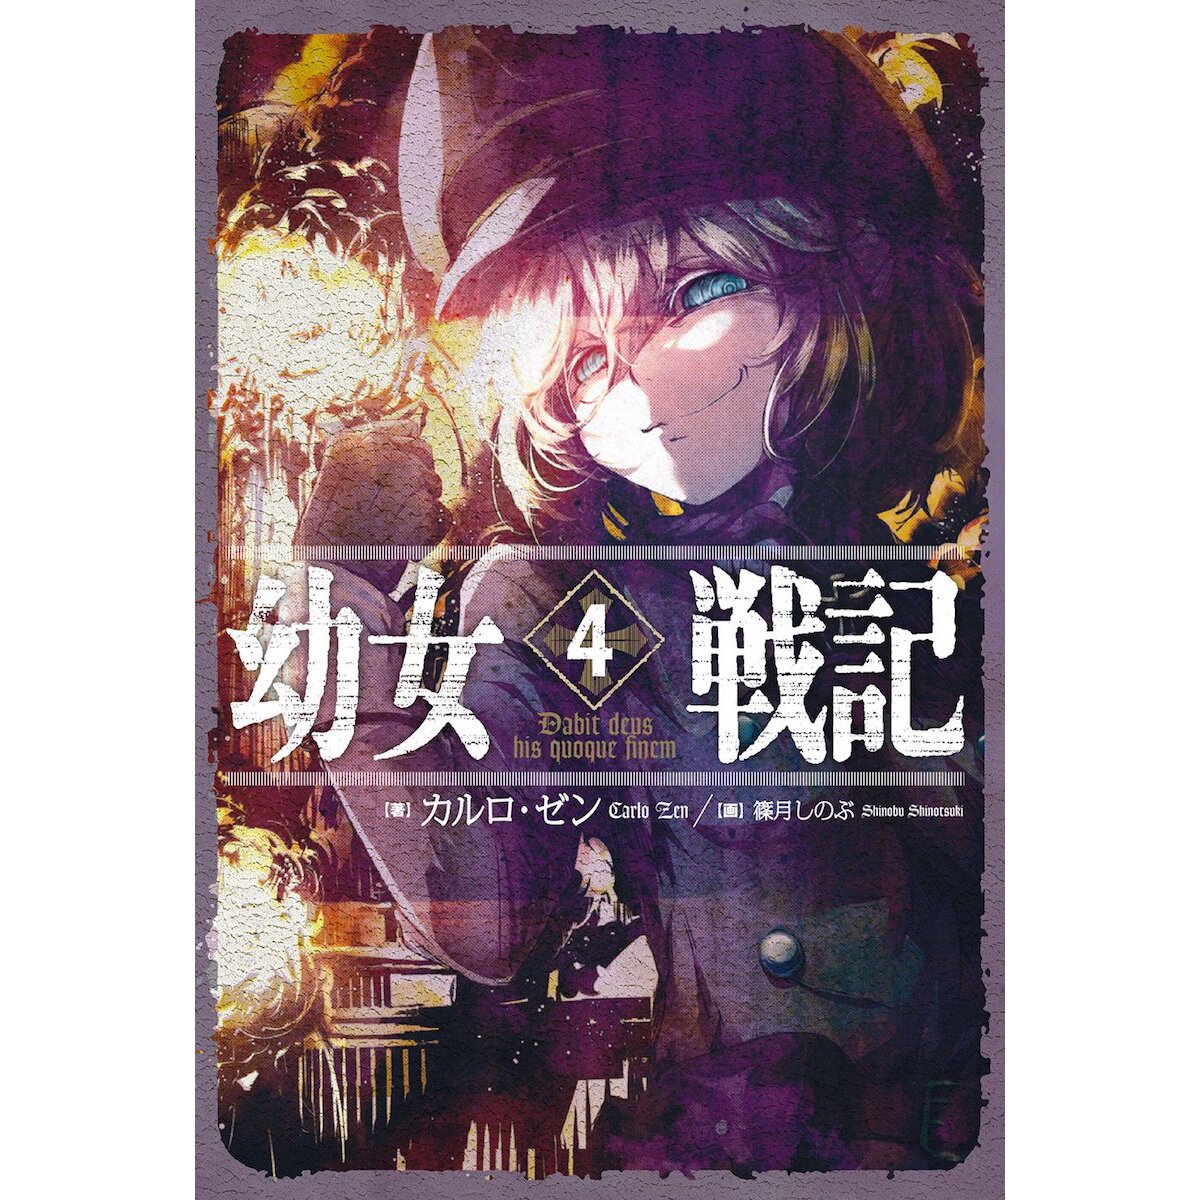 Anime Youjo Senki: Saga of Tanya the Evil em Blu-ray